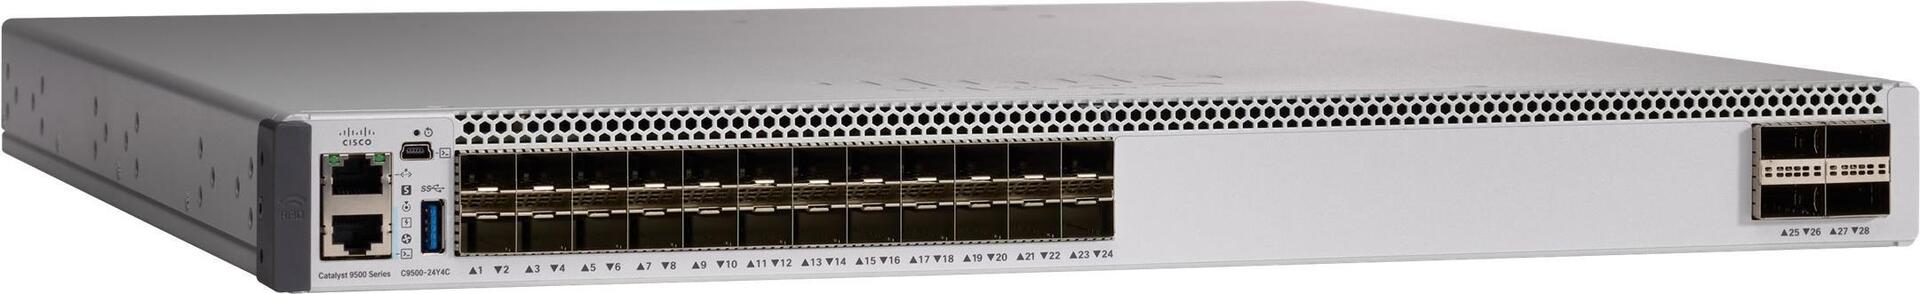 Cisco Catalyst 9500 (C9500-24Y4C-E)